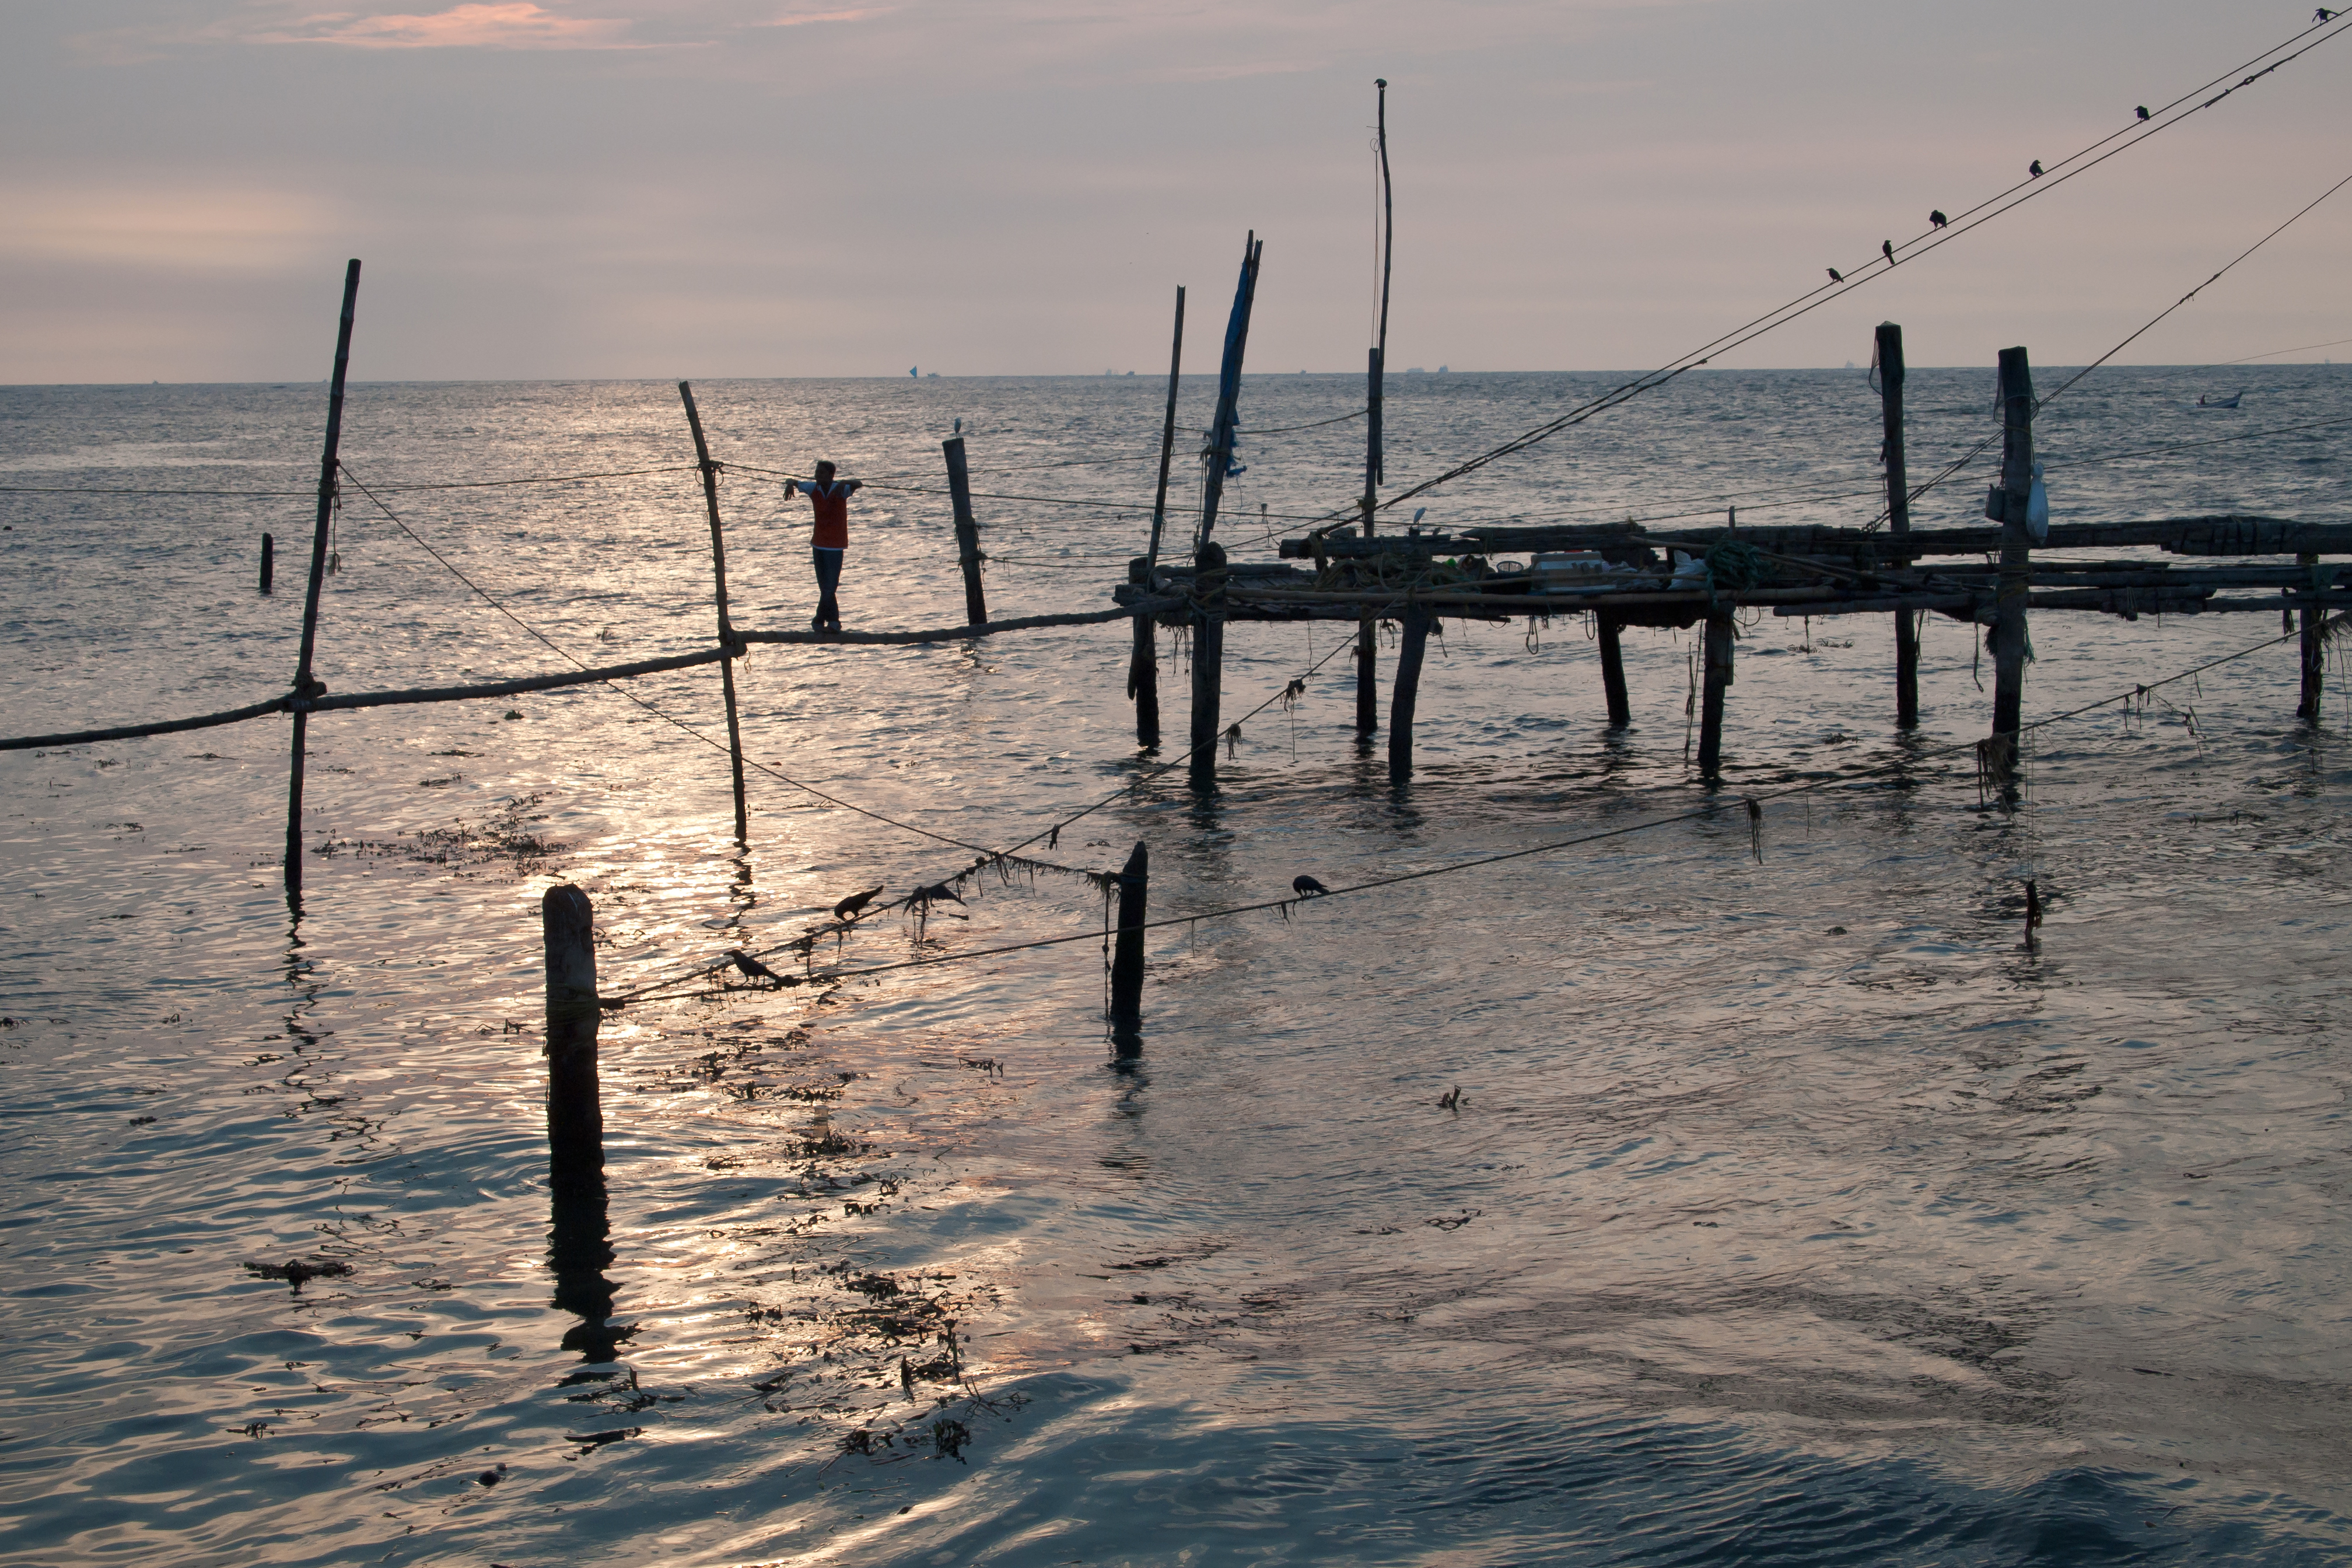 File:Kochi, Fishing nets, Sunset, Kerala, India.jpg - Wikipedia